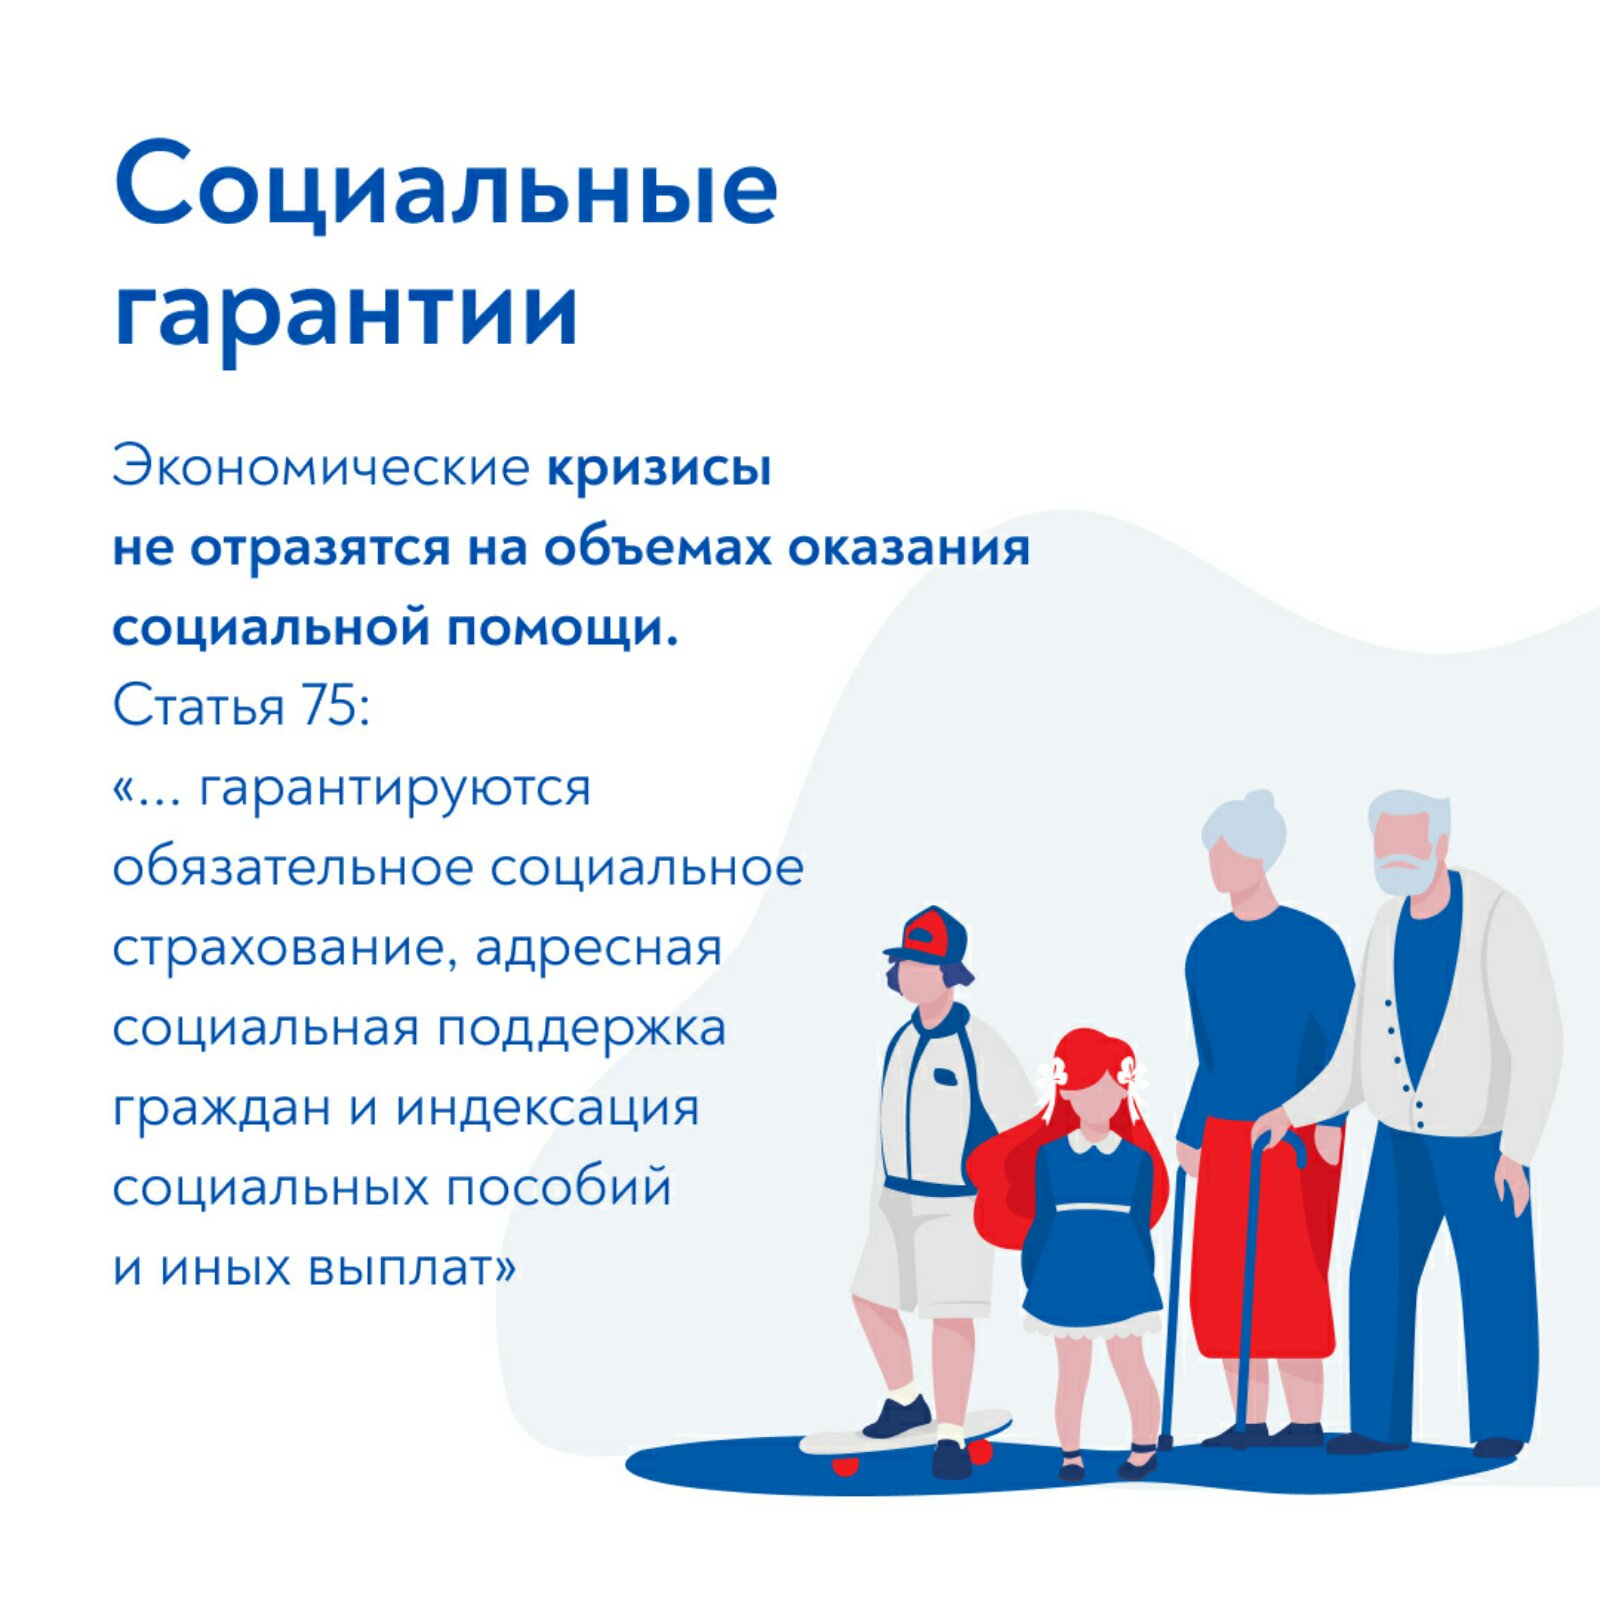 Социальные гарантии гражданам рф. Социальные гарантии. Социальные гарантии Конституция. Соц гарантии в РФ. Социальные гарантии в Конституции РФ 2020.